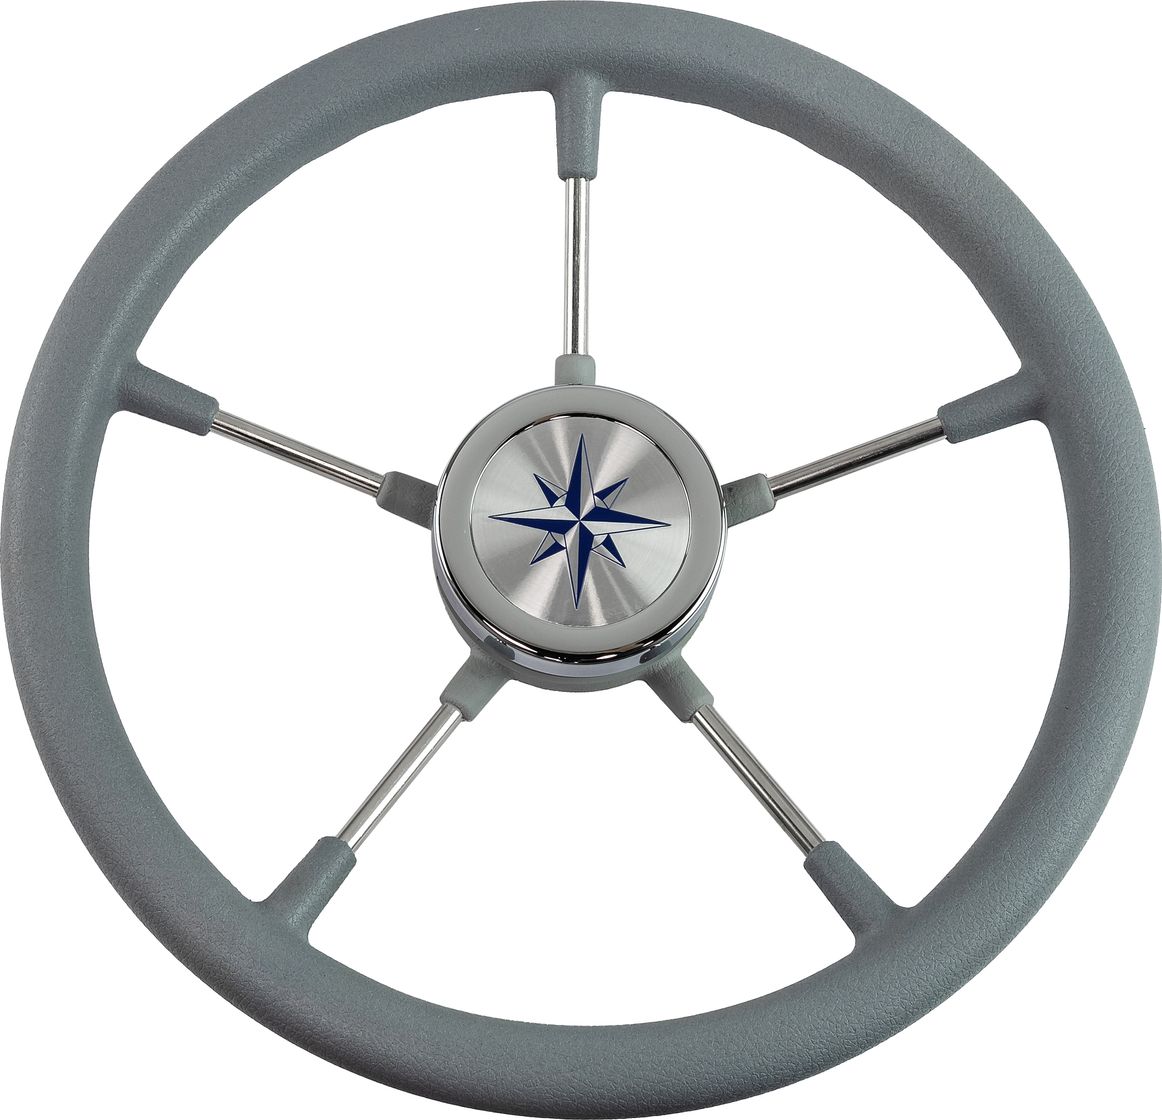 Рулевое колесо RIVA RSL обод серый, спицы серебряные д. 360 мм VN735022-03 рулевое колесо leader tanegum серый обод серебряные спицы д 360 мм vn7360 03